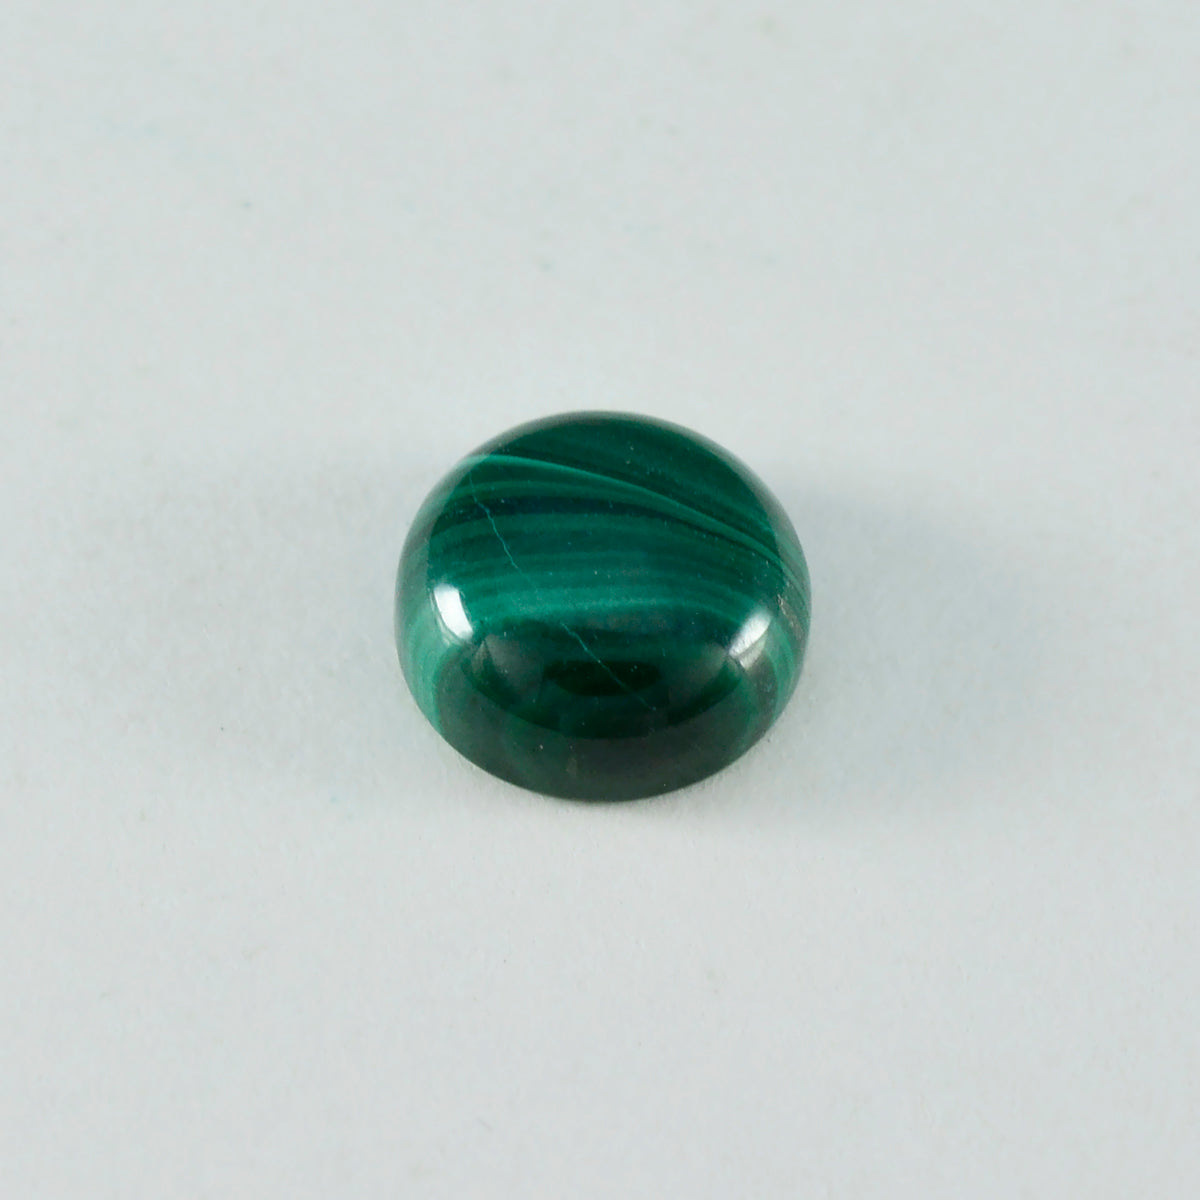 Riyogems 1 Stück grüner Malachit-Cabochon, 13 x 13 mm, runde Form, erstaunlicher Qualitätsedelstein